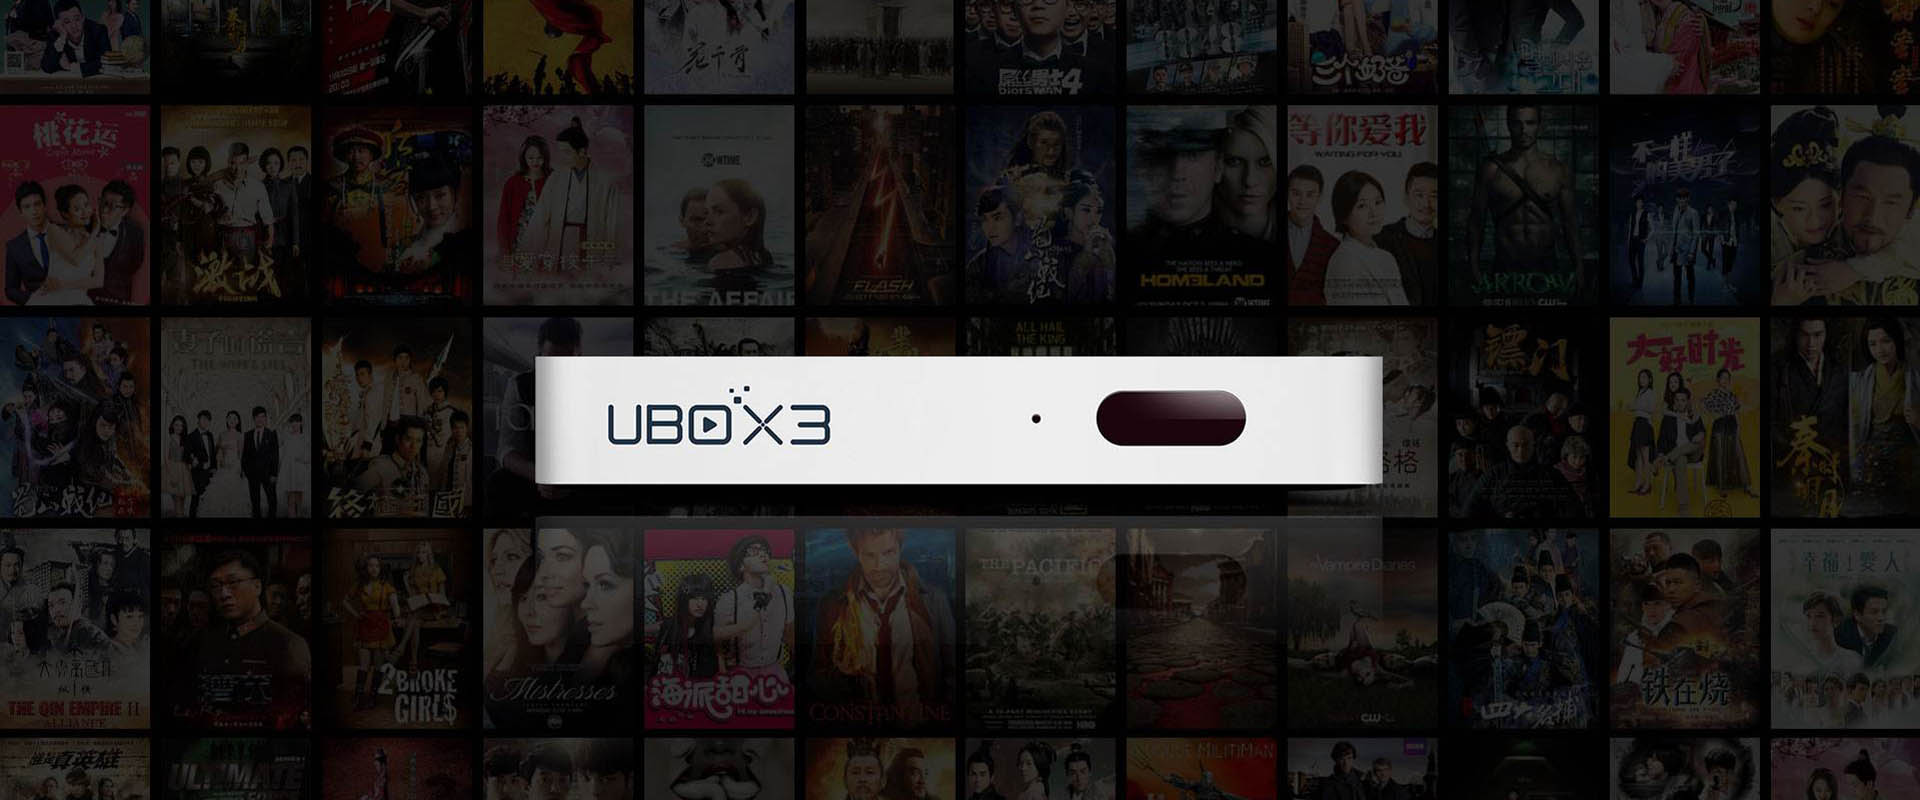 TV Box UBOX 3 - ดูรายการ FreeTV จากแผ่นดินใหญ่ของจีน